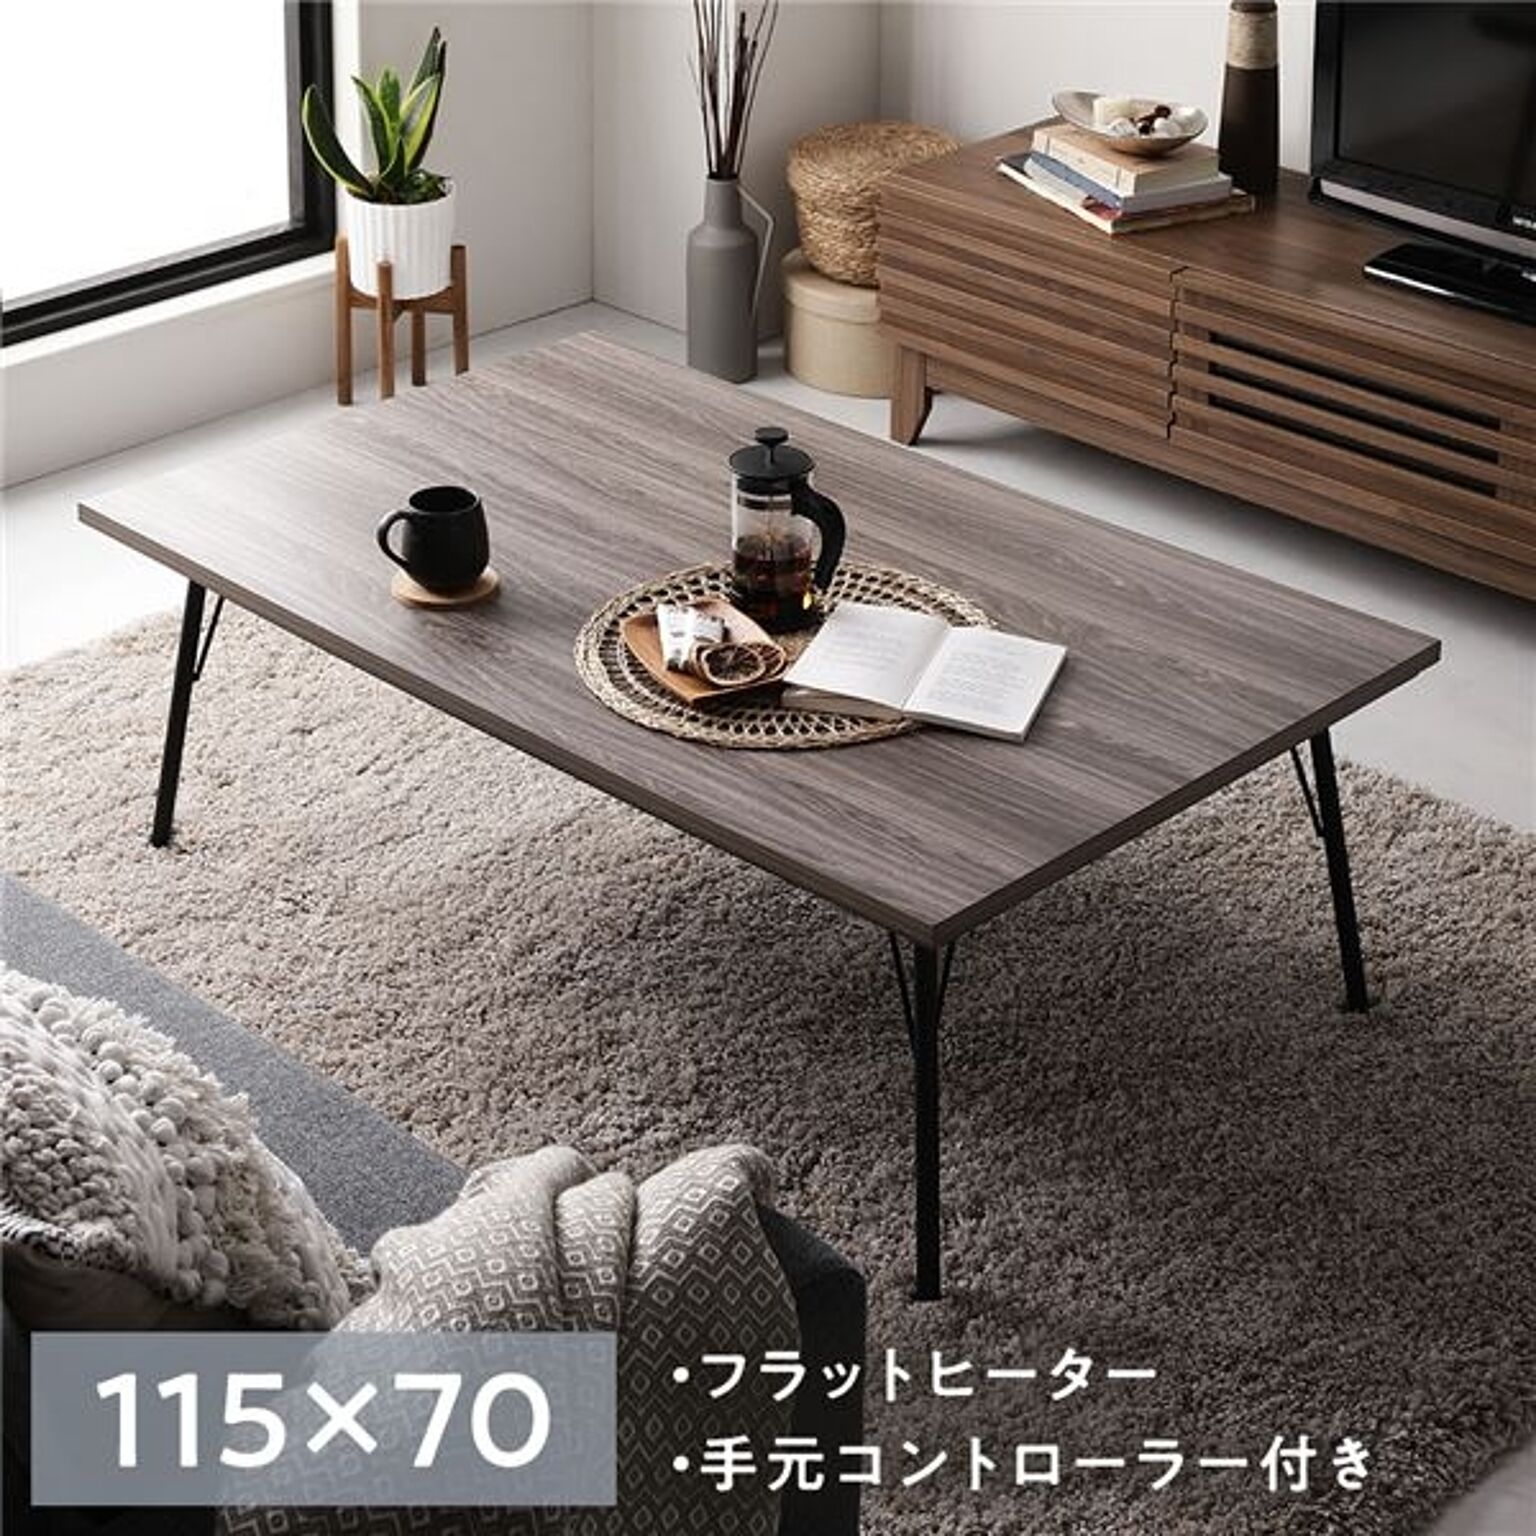 こたつ テーブル 約幅115×奥行70cm×高さ40cm 長方形 グレイッシュ ブラウン 木目調 アイアンデザイン スチール 薄型 フラットヒーター 組立式 ローテーブル センターテーブル